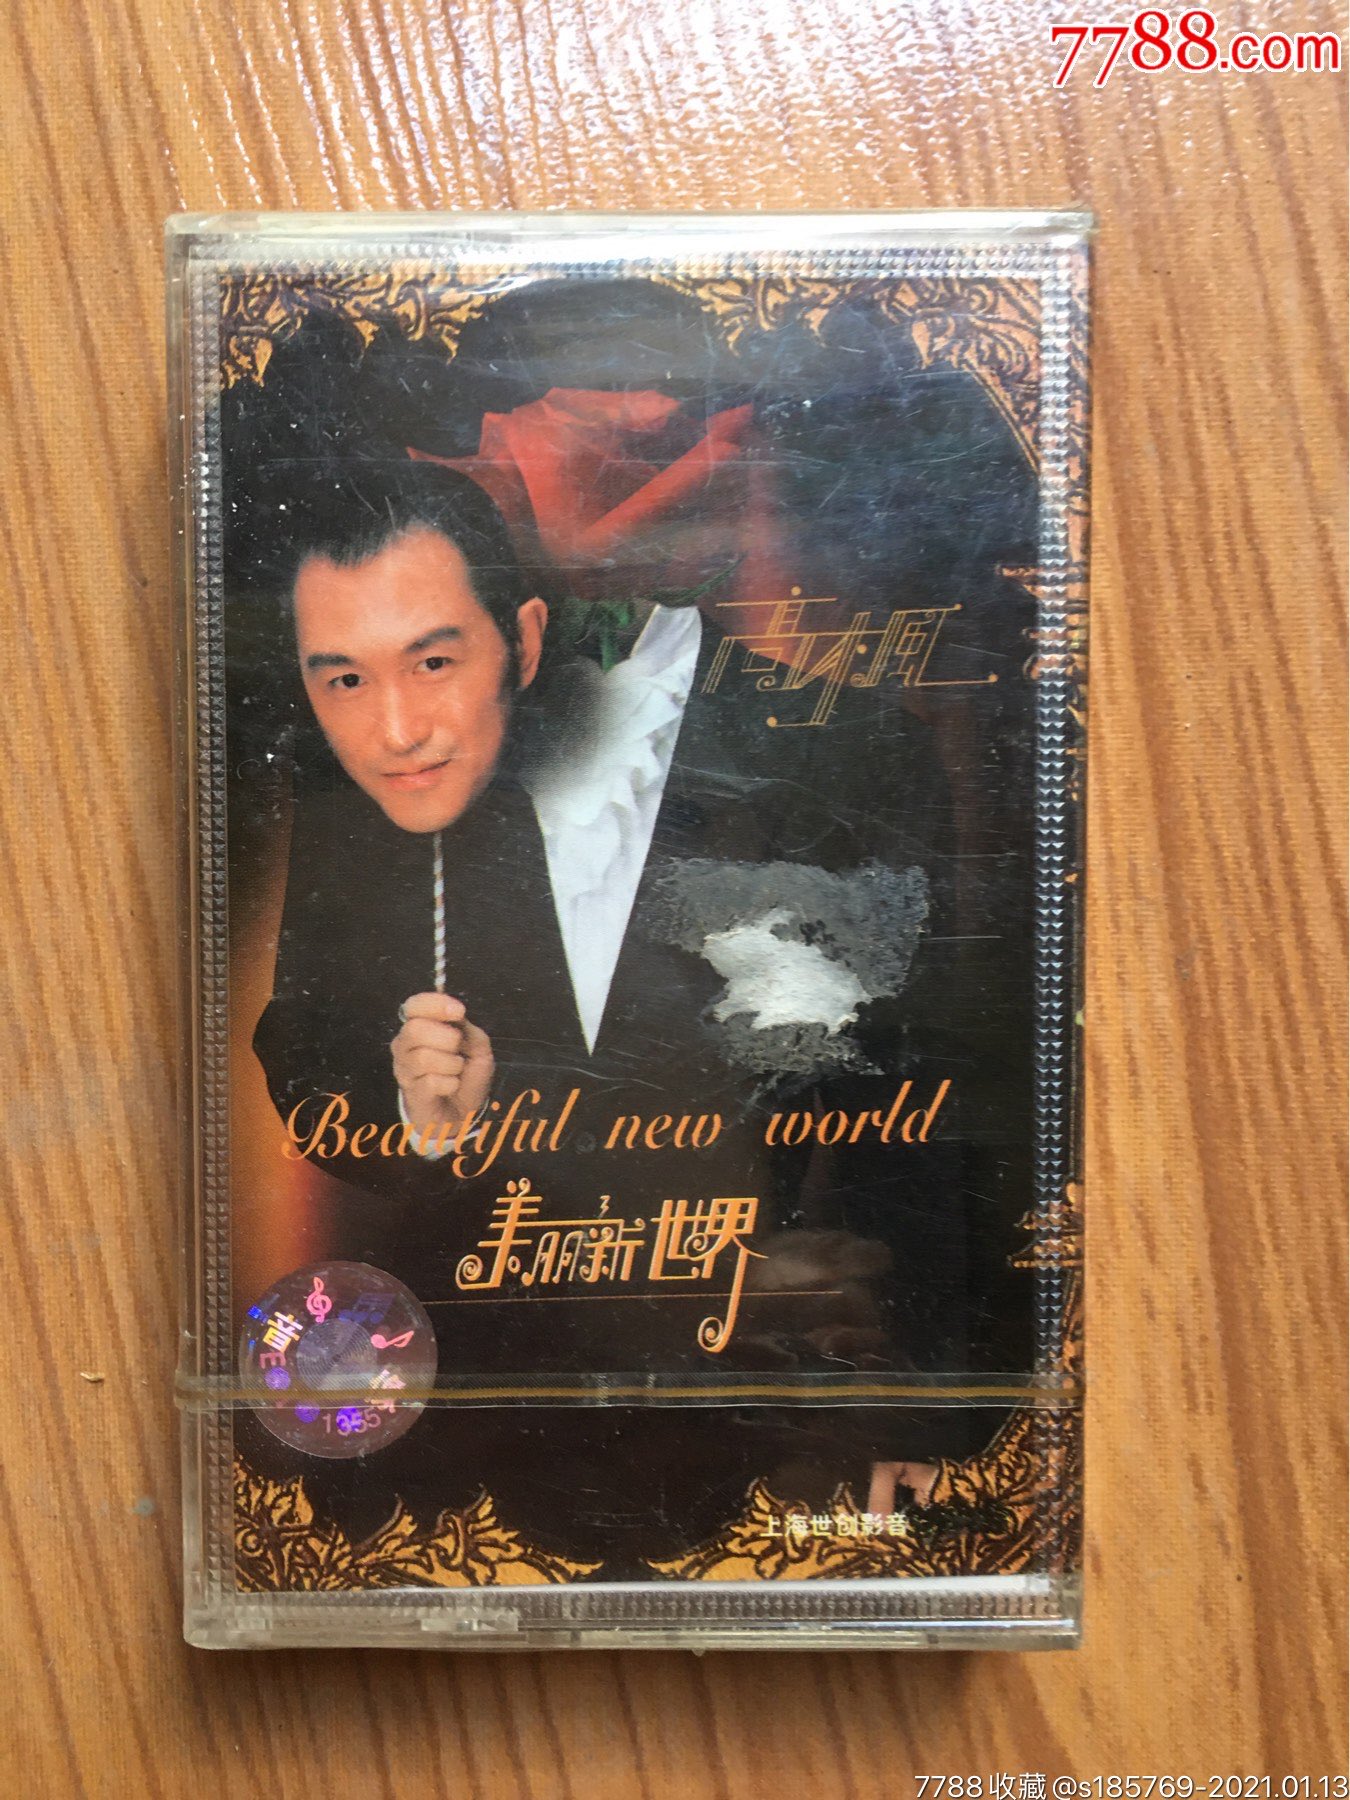 高枫美丽新世界专辑卡带磁带未拆封